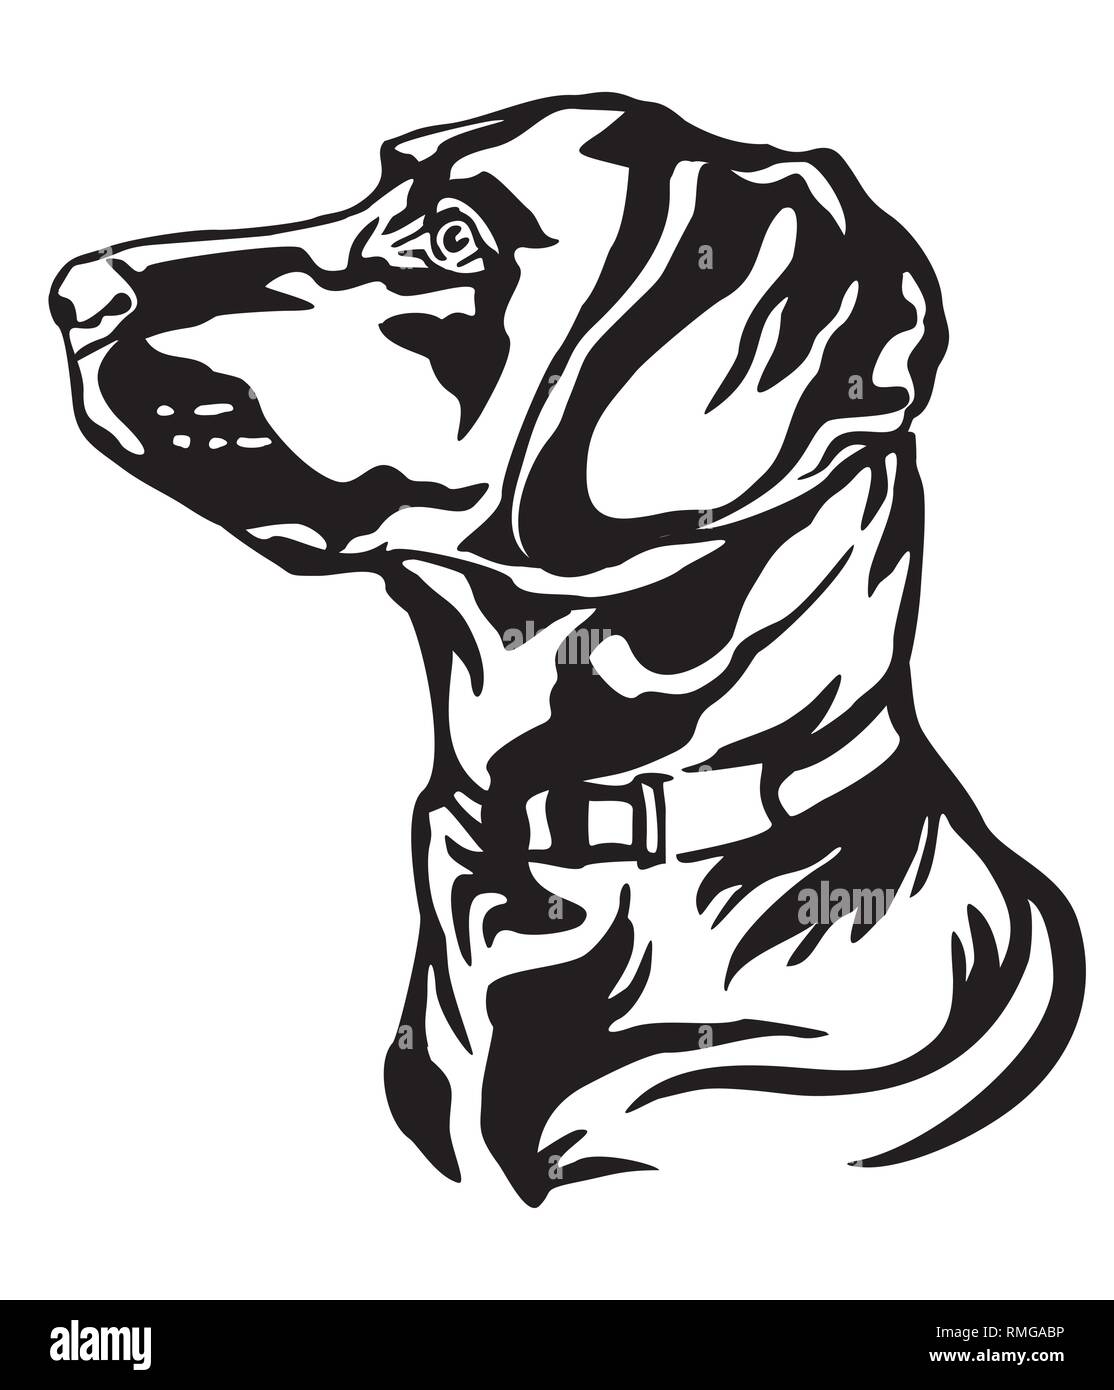 Dekorative Umrisse Portrait von Hund Labrador Retriever Suche im Profil, Vector Illustration in schwarzer Farbe auf weißem Hintergrund. Bild für d Stock Vektor